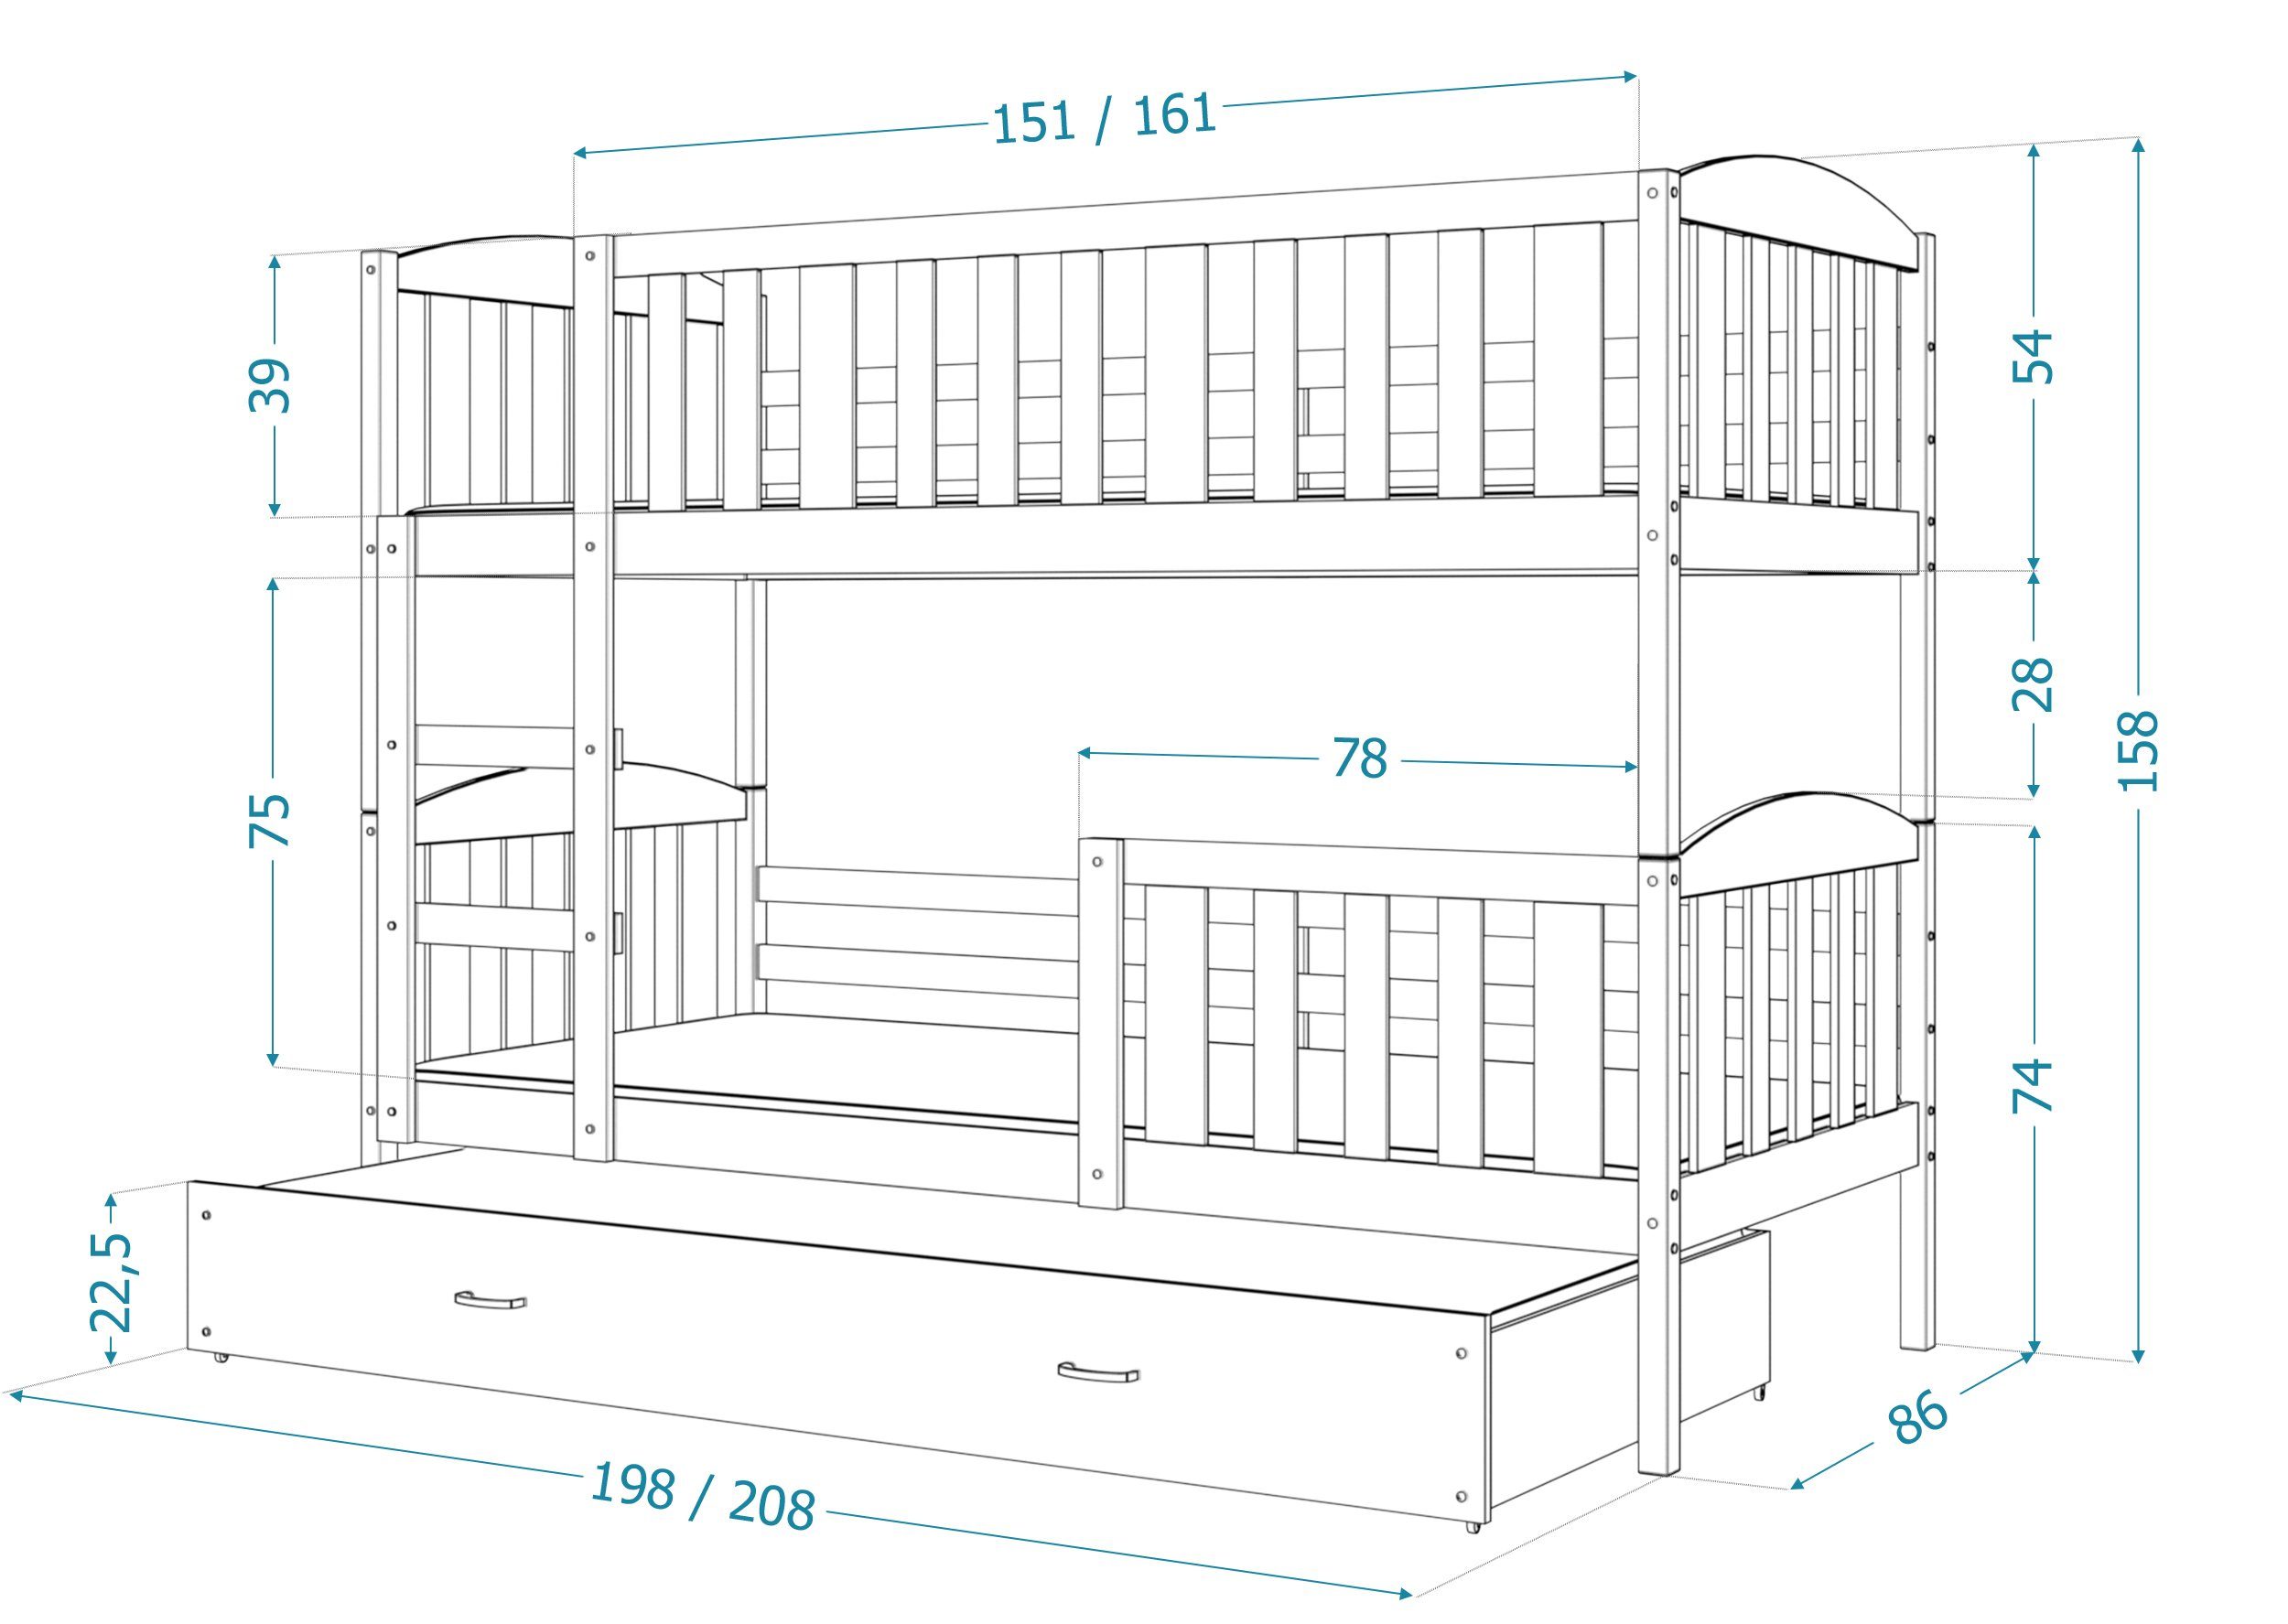 Siblo Kinderbett Grau Möbelplatte Massivholz, Weiß Rupert Schaummatratzen), Sicherheitsbarriere, Lattenrost, und Bett (Flexibler Schublade